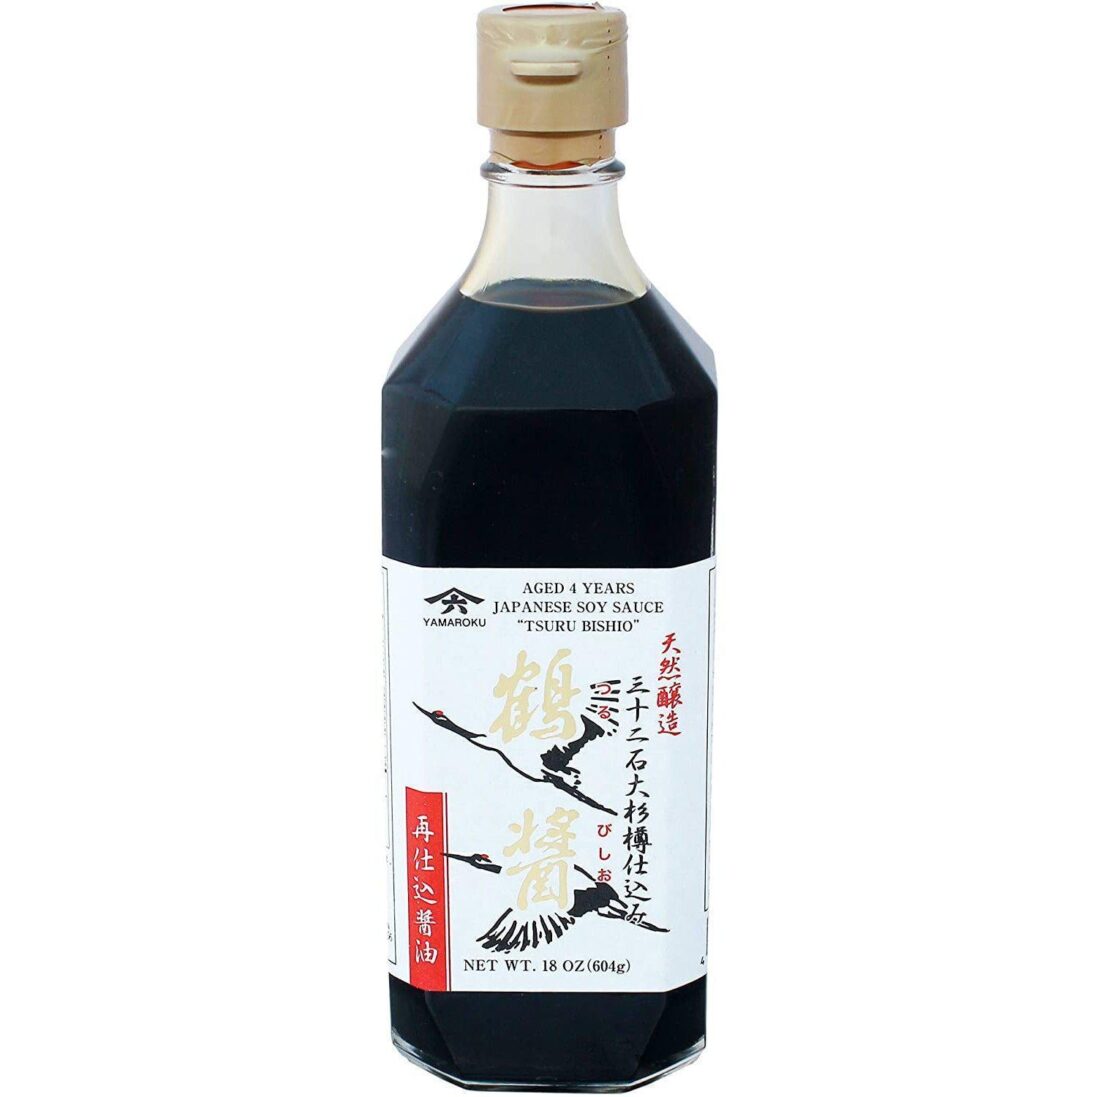 Yamaroku-Tsurubishio-Shoyu-Japanese-Soy-Sauce-500ml-Japanese-Taste_f196b76b-0fc8-4409-8f8c-85cb63b5720e_2048x.jpg